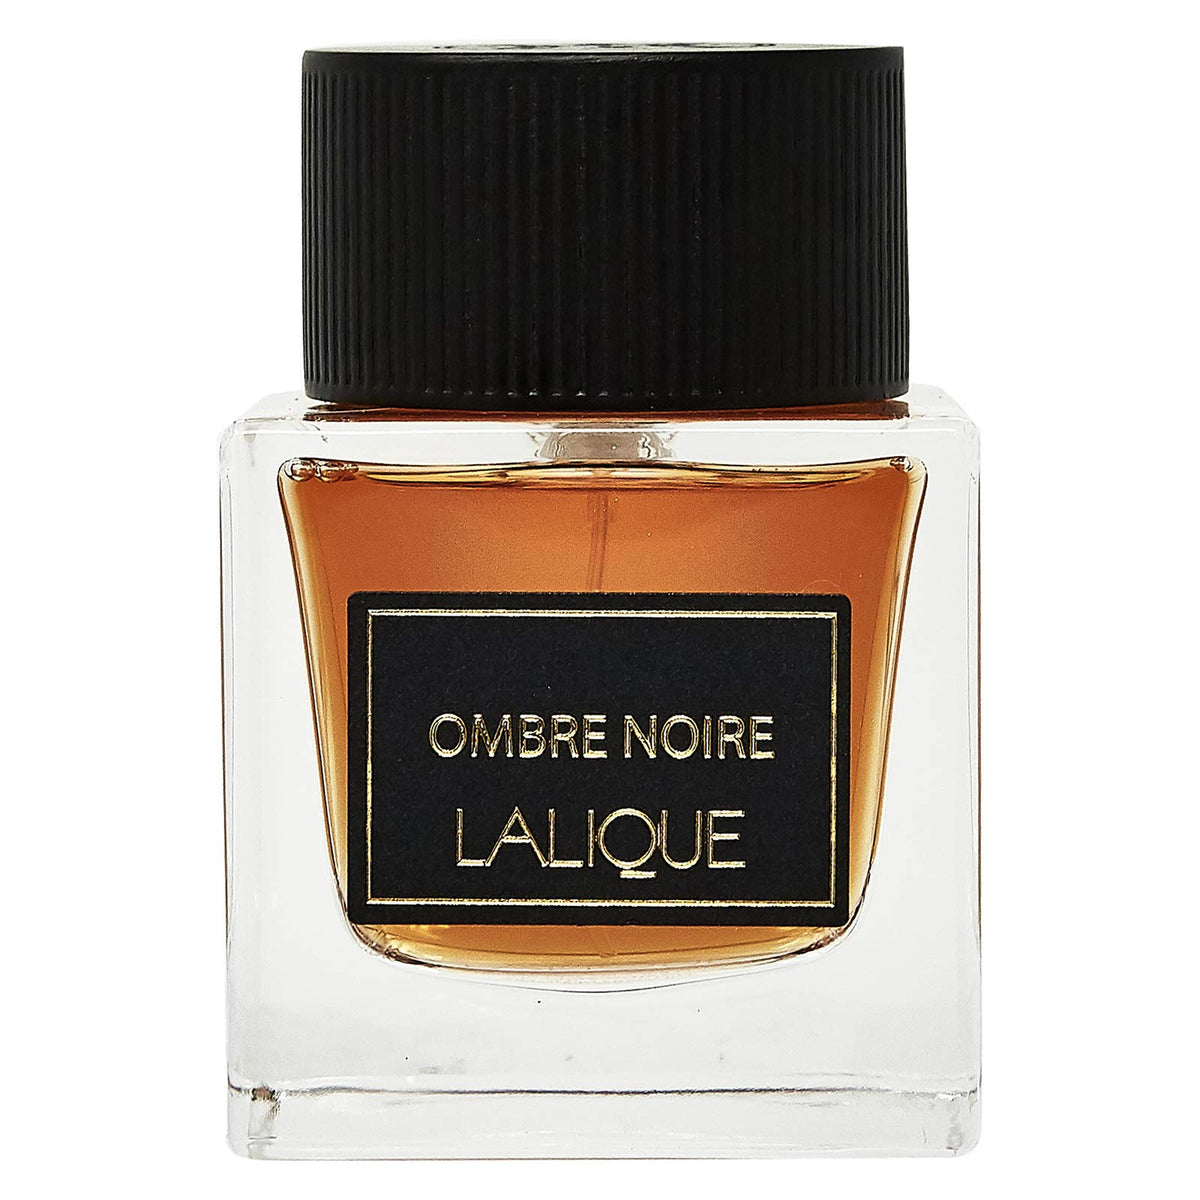 LaliqueOmbre Noire for Men - Eau De Parfum - 100ml